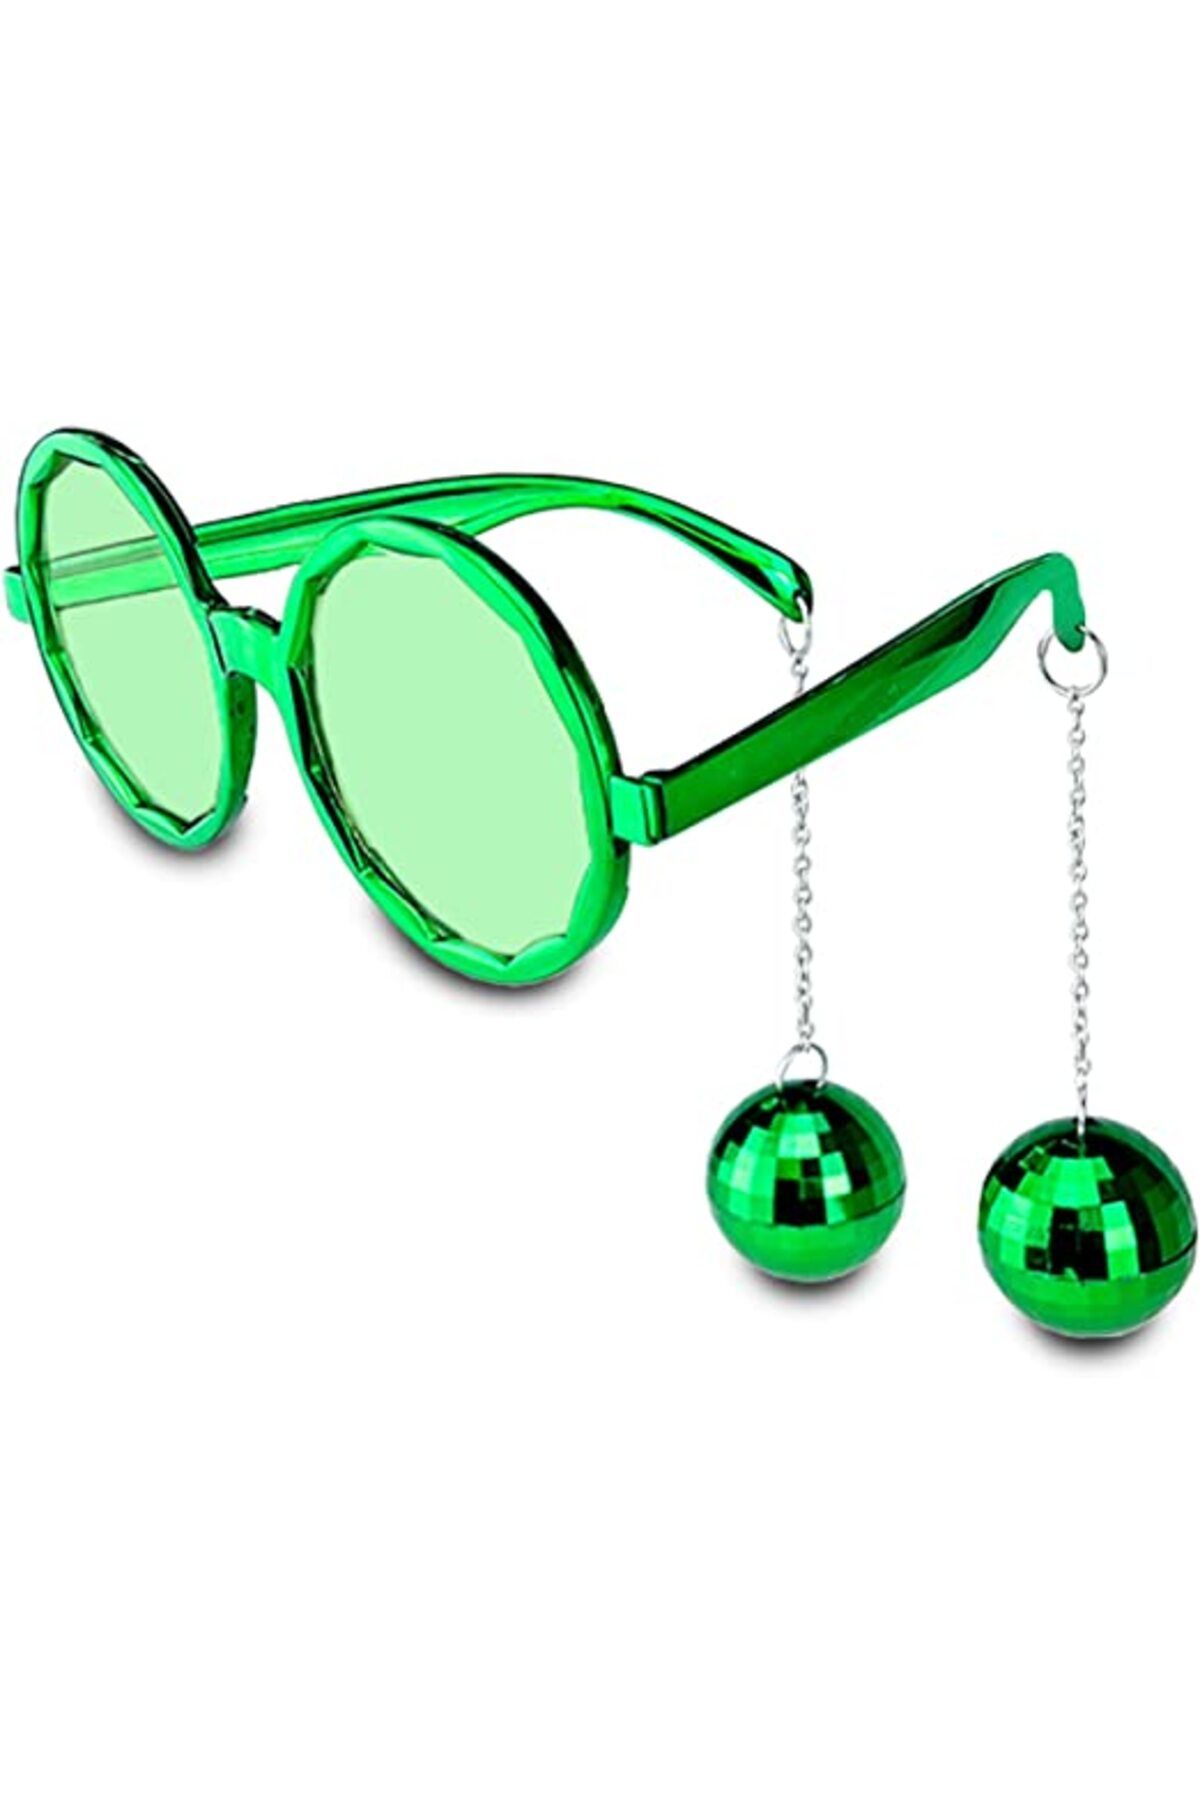 ERTEN Disko Toplu Küpeli Parti Gözlüğü Yeşil Renk (4352)